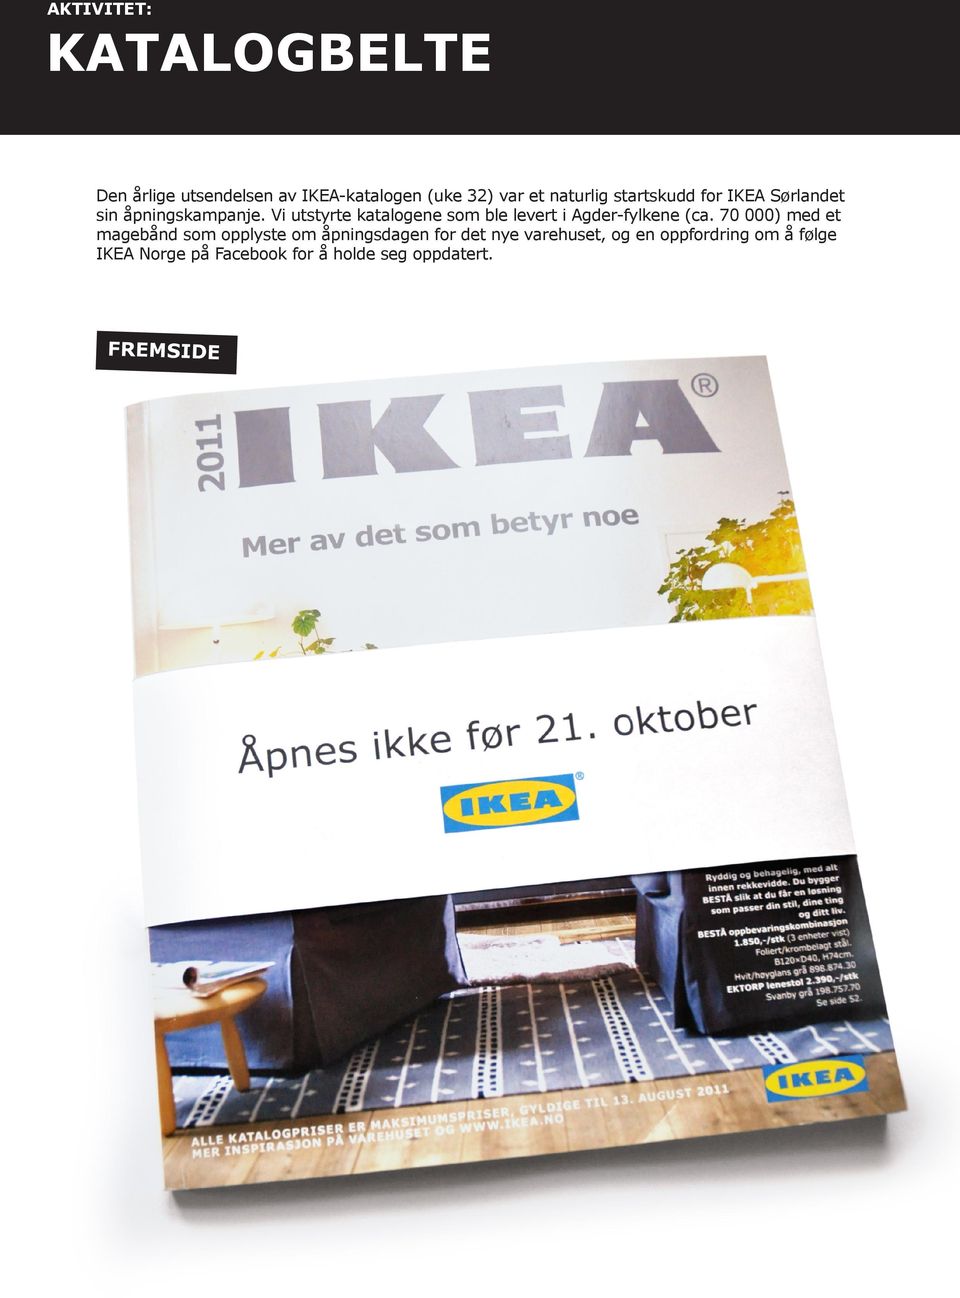 ÅPNINGEN AV IKEA SØRLANDET. Oversikt over elementer som utgjorde kampanjen  for åpningen av IKEA Sørlandet. - PDF Gratis nedlasting